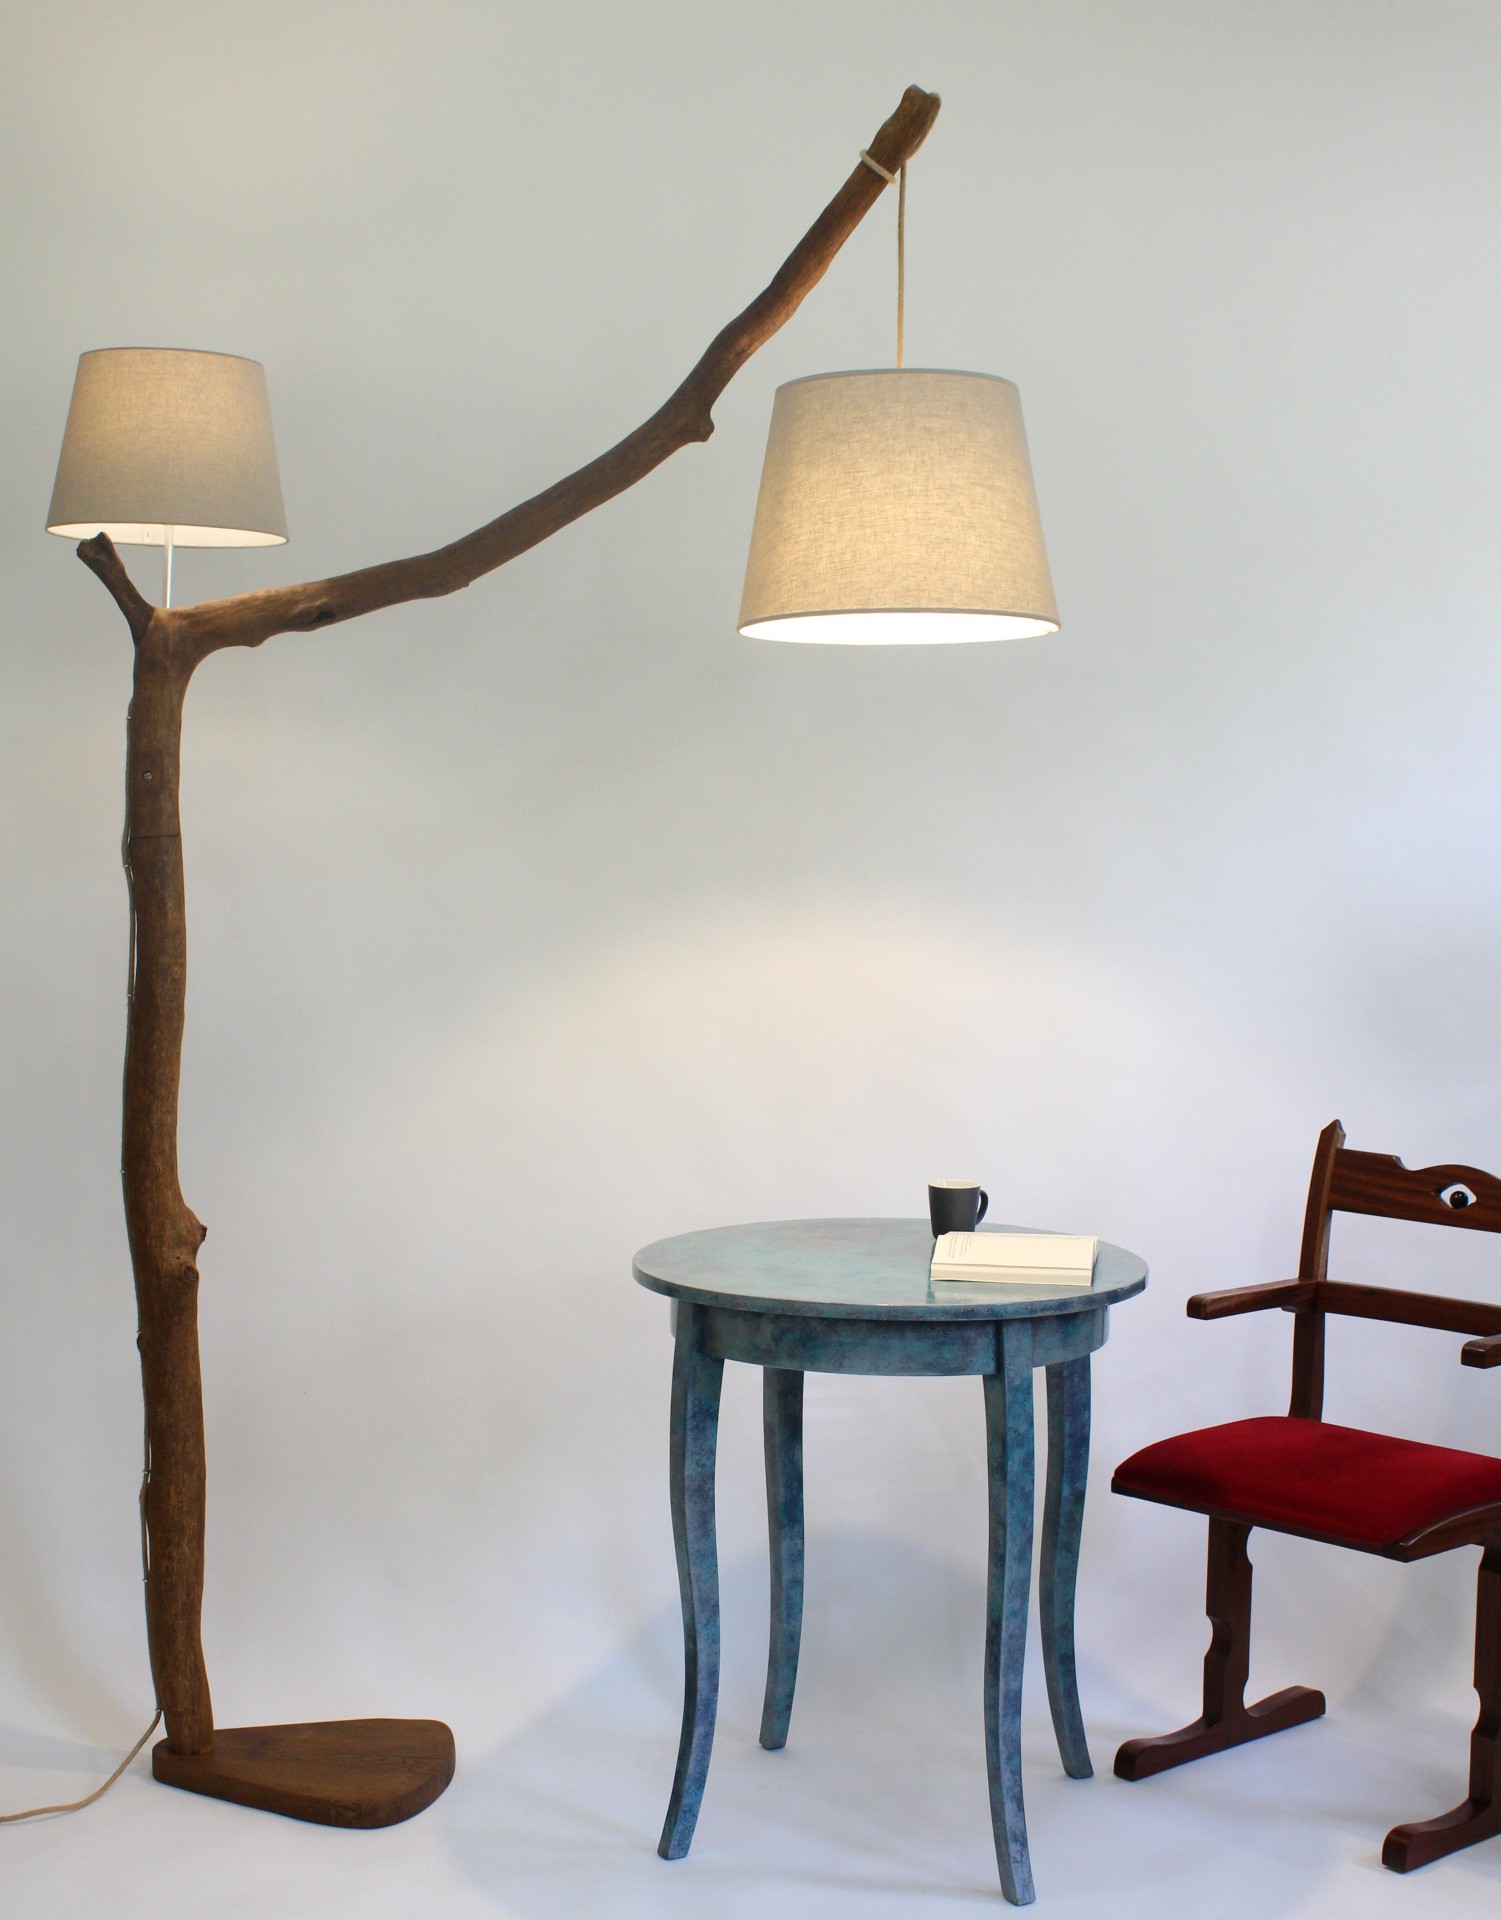 Lampa podłogowa z gałęzi dębowej -84- lampa nad stół, lampa łukowa